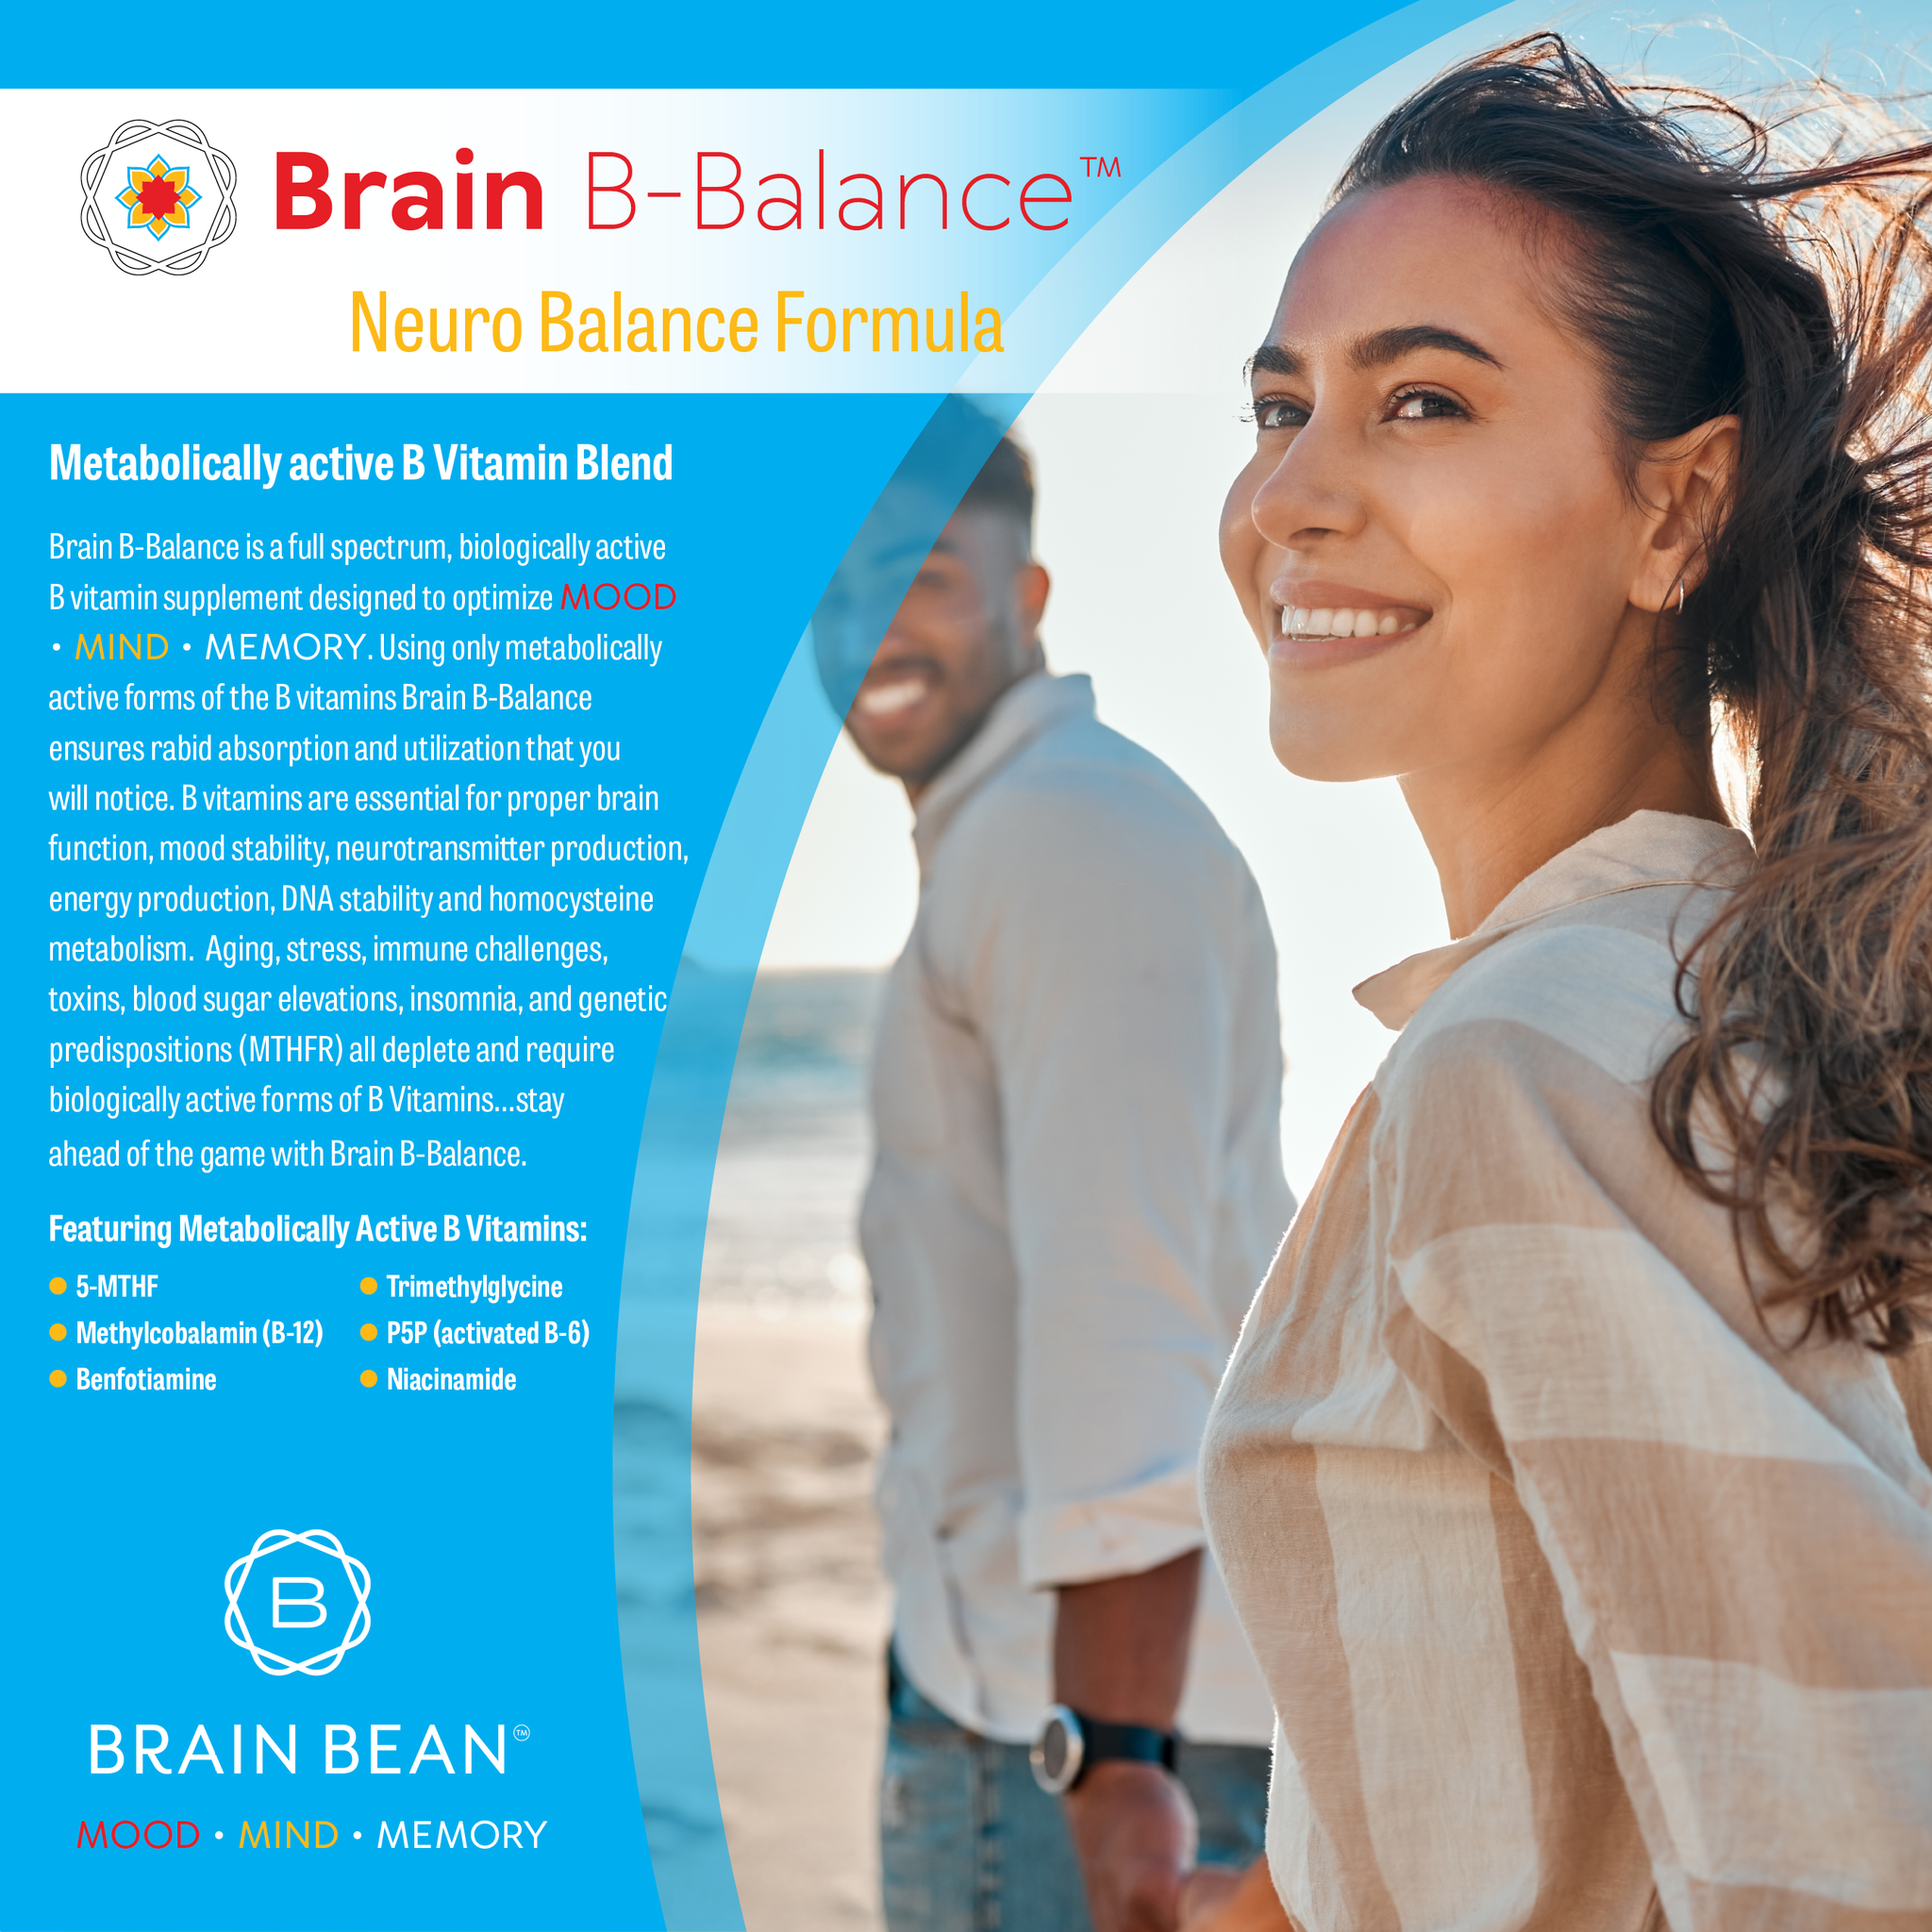 Brain B-Balance